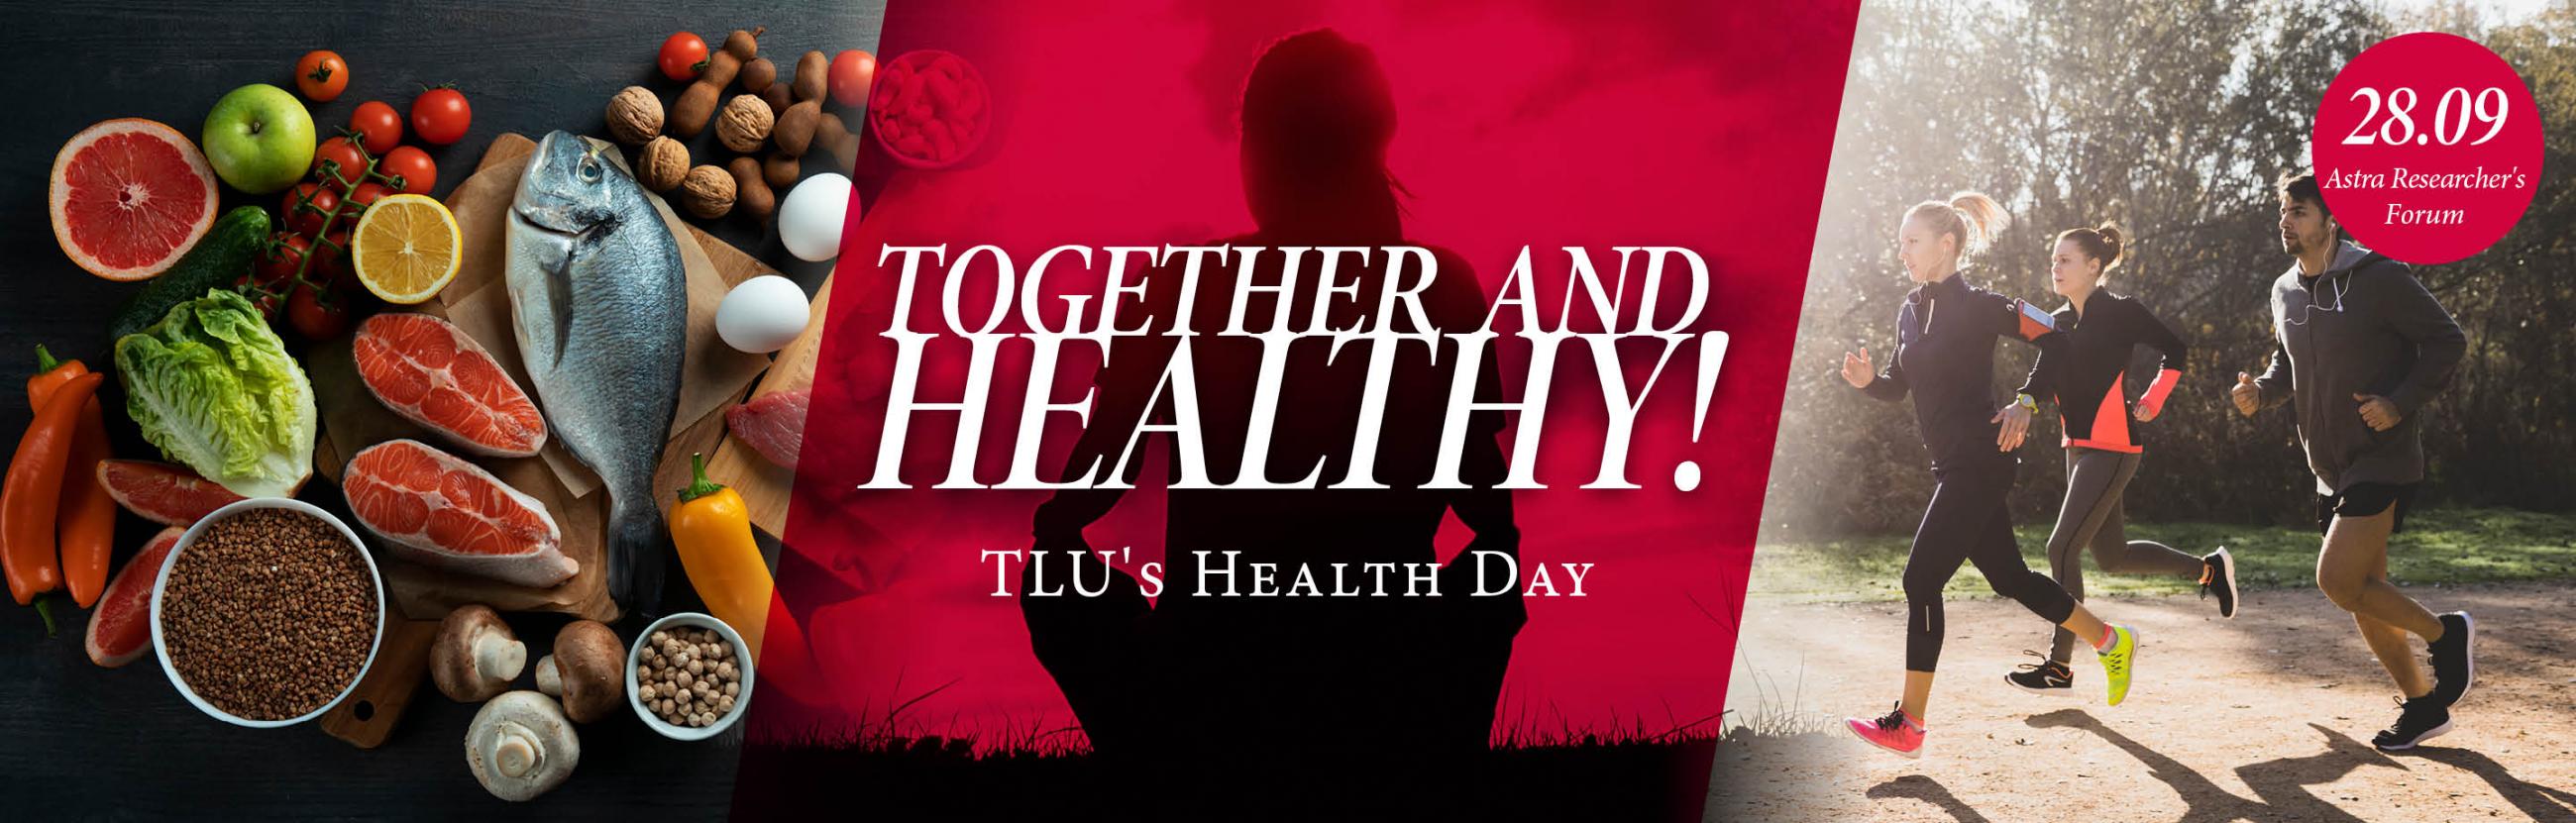 health day banner